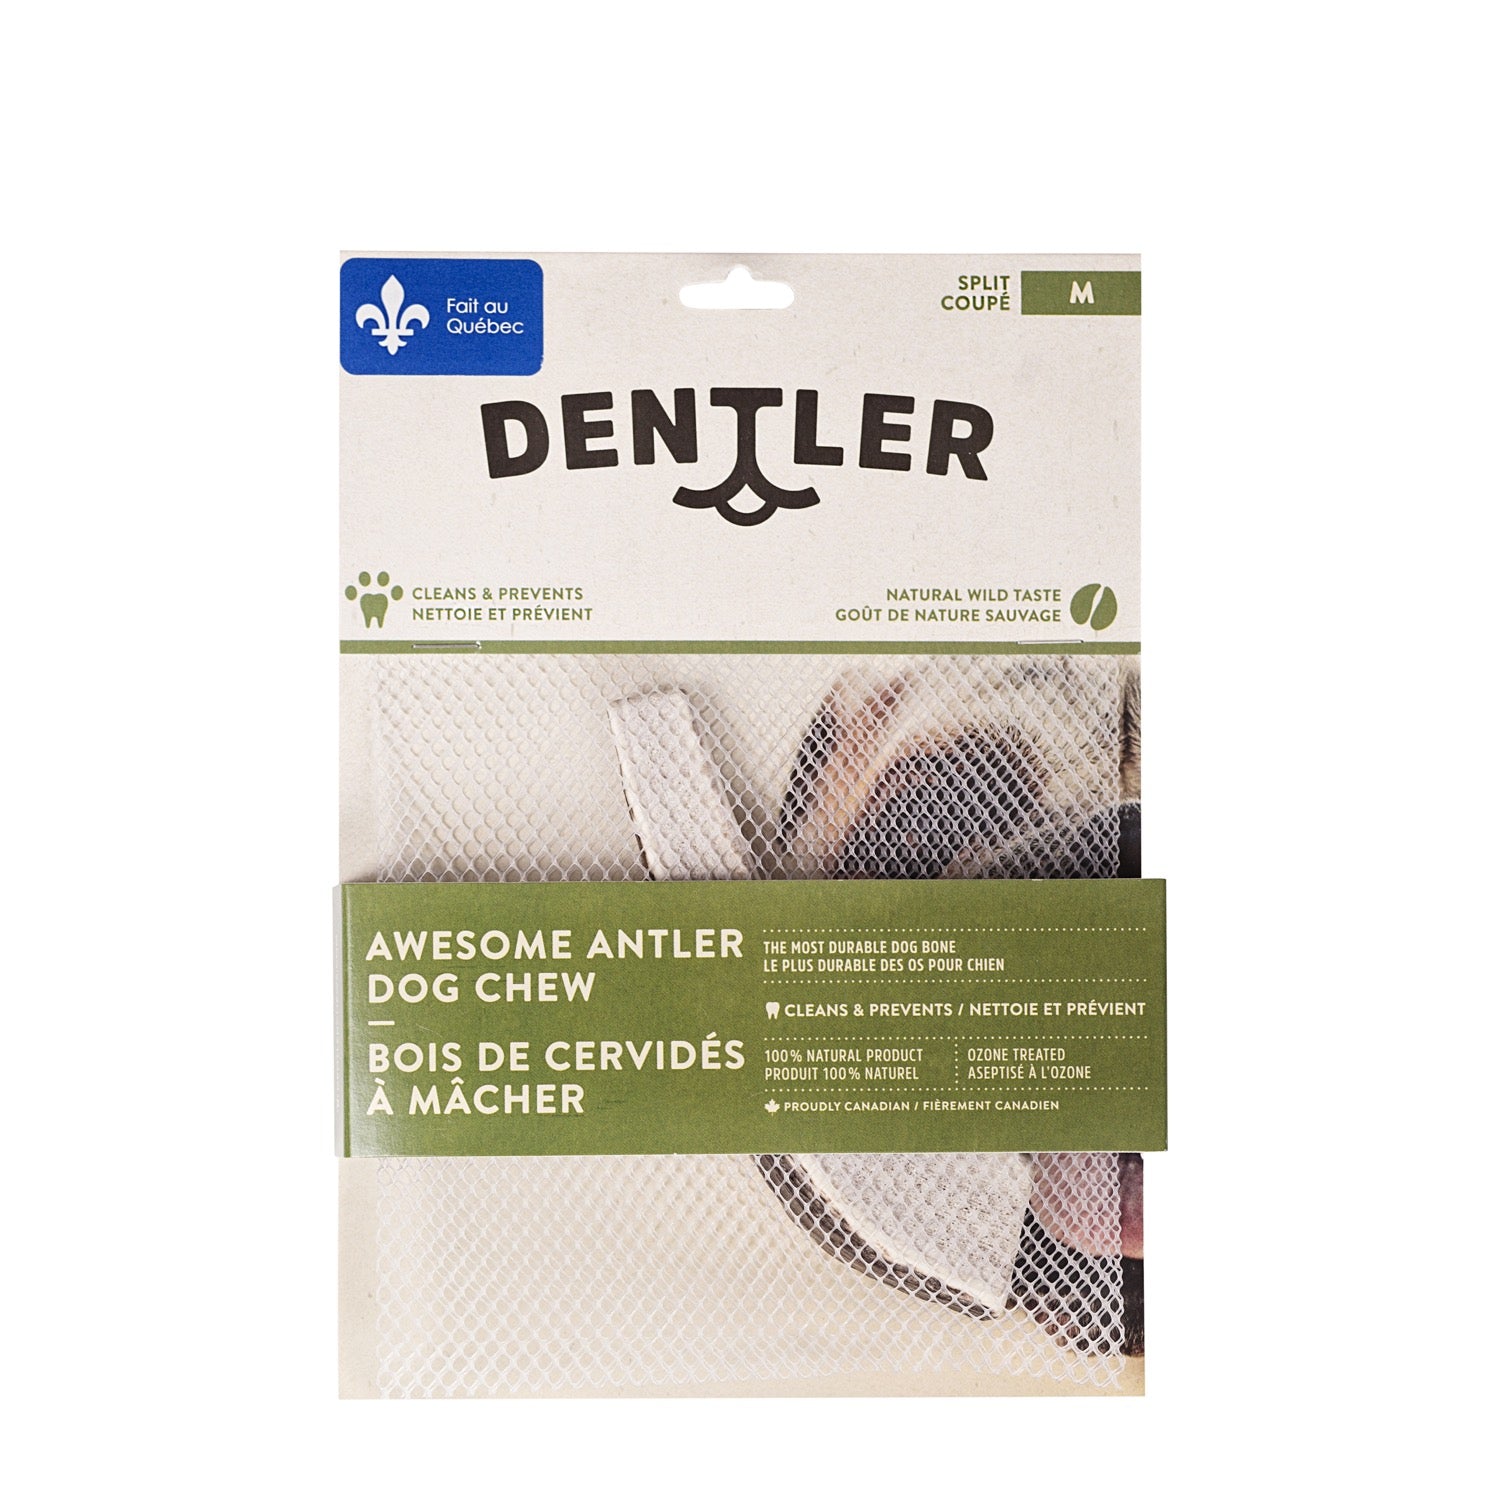 Dentler - Natural Wild Taste (Split)